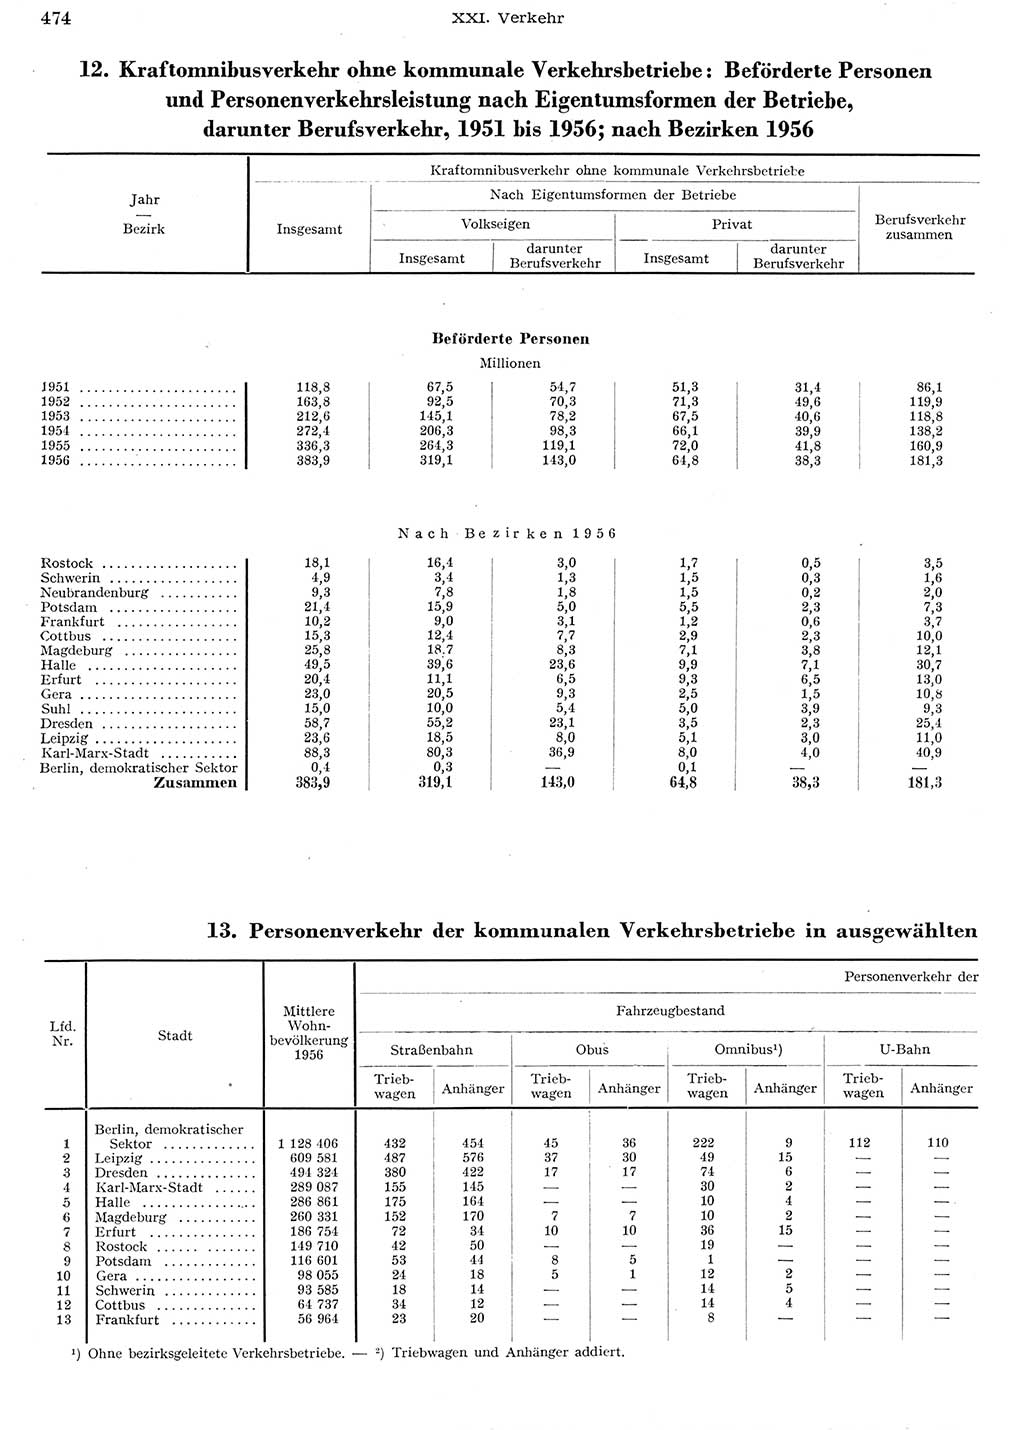 Statistisches Jahrbuch der Deutschen Demokratischen Republik (DDR) 1956, Seite 474 (Stat. Jb. DDR 1956, S. 474)